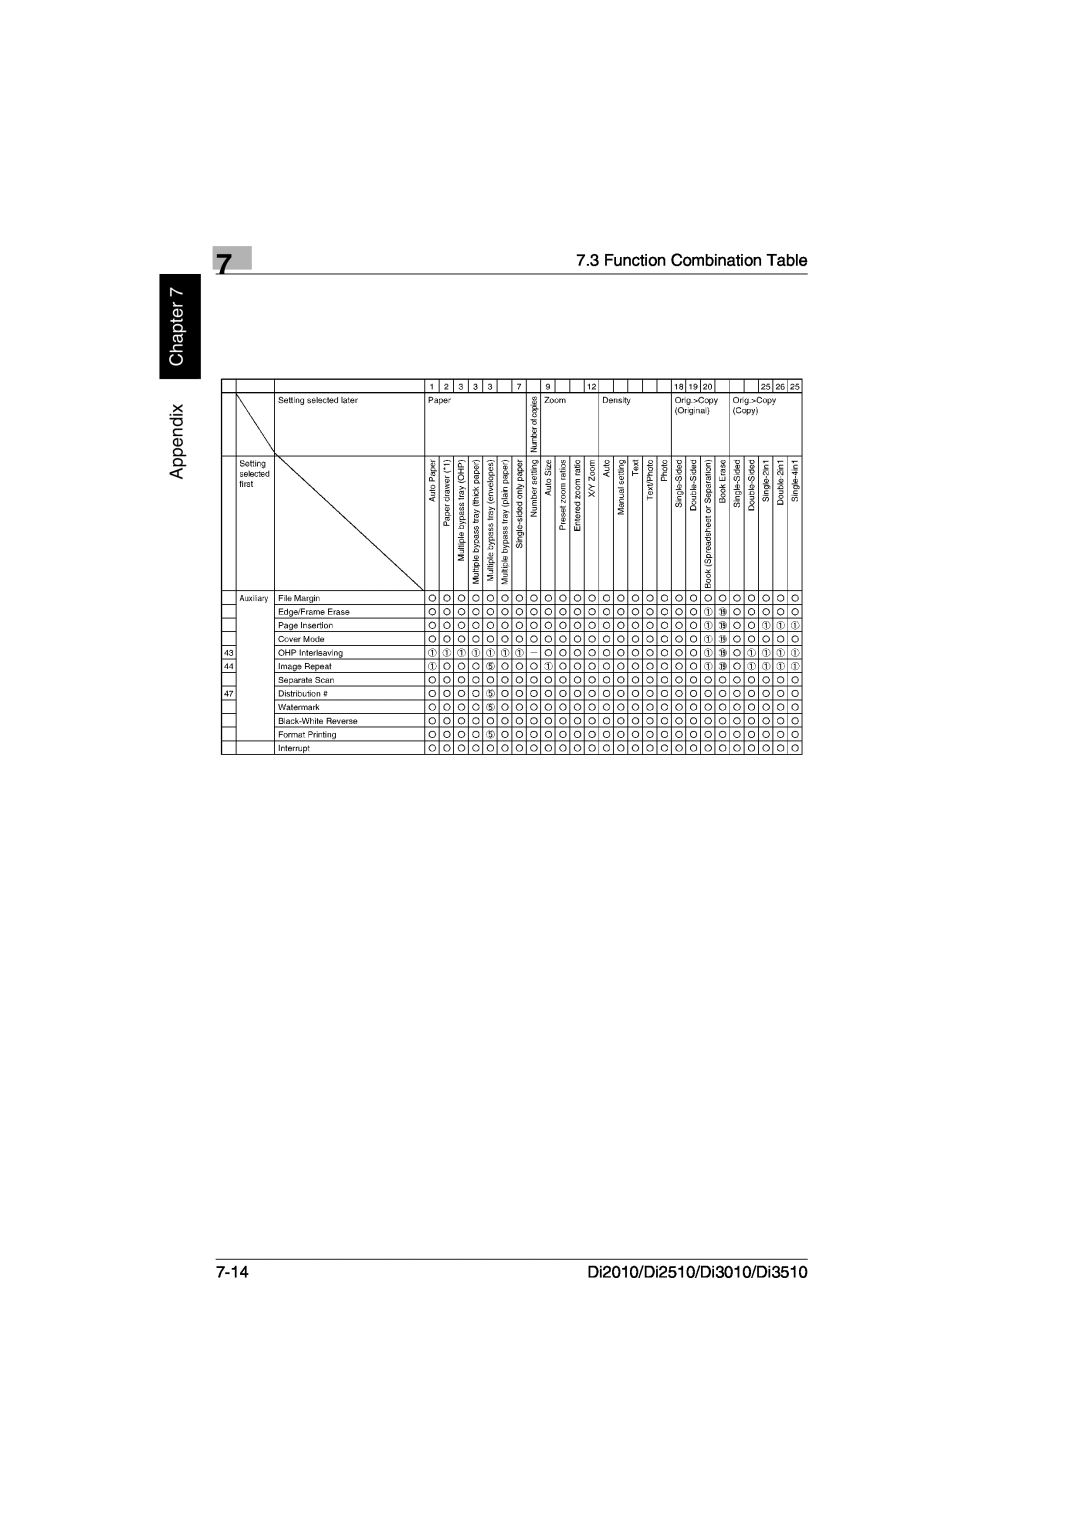 Minolta DI2510, DI2010, DI3010 user manual Appendix Chapter, Function Combination Table, 7-14, Di2010/Di2510/Di3010/Di3510 